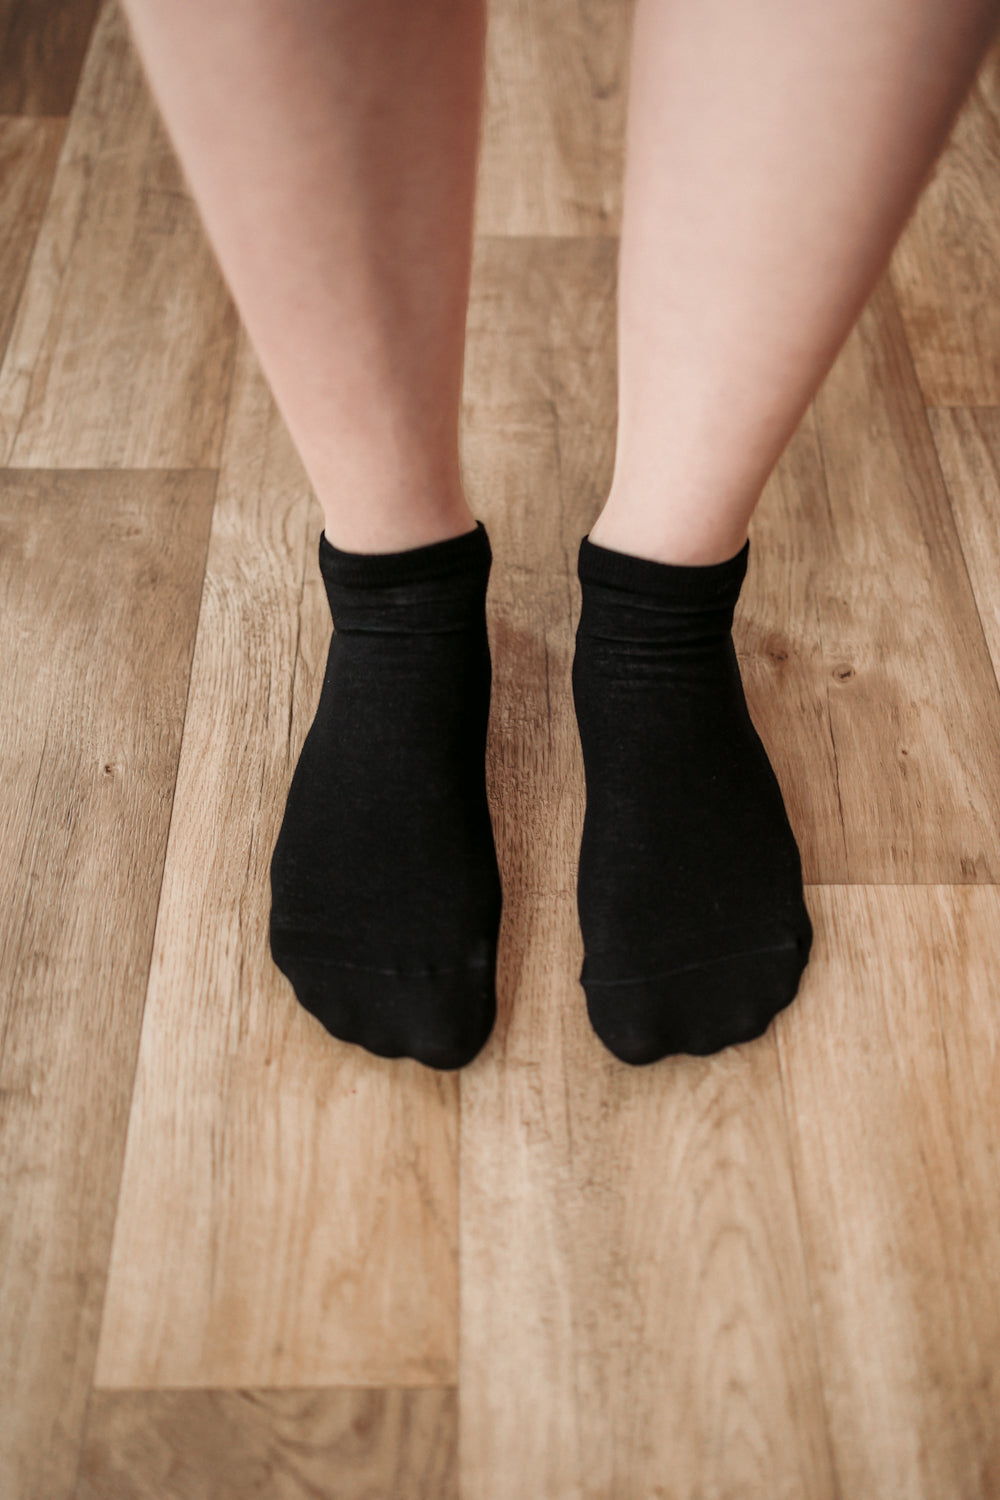 Barefoot Socks - Low-cut - Essentials - Black 3 OzBarefoot Australia